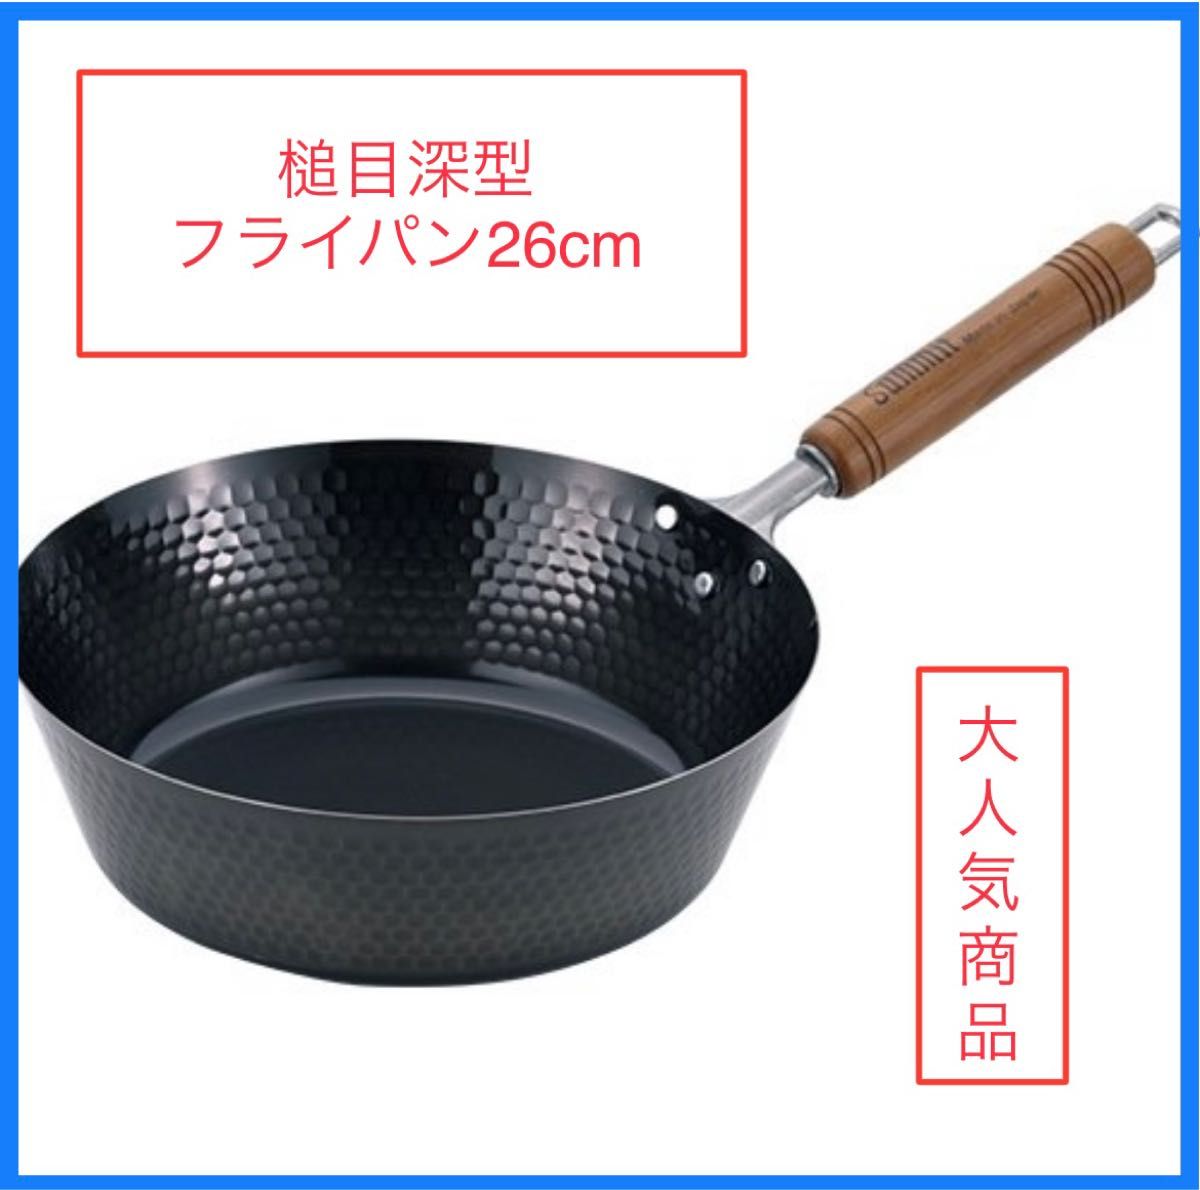 サミット工業 日本製 鉄鍋 槌目深型フライパン 26cm 深型フライパン IH対応